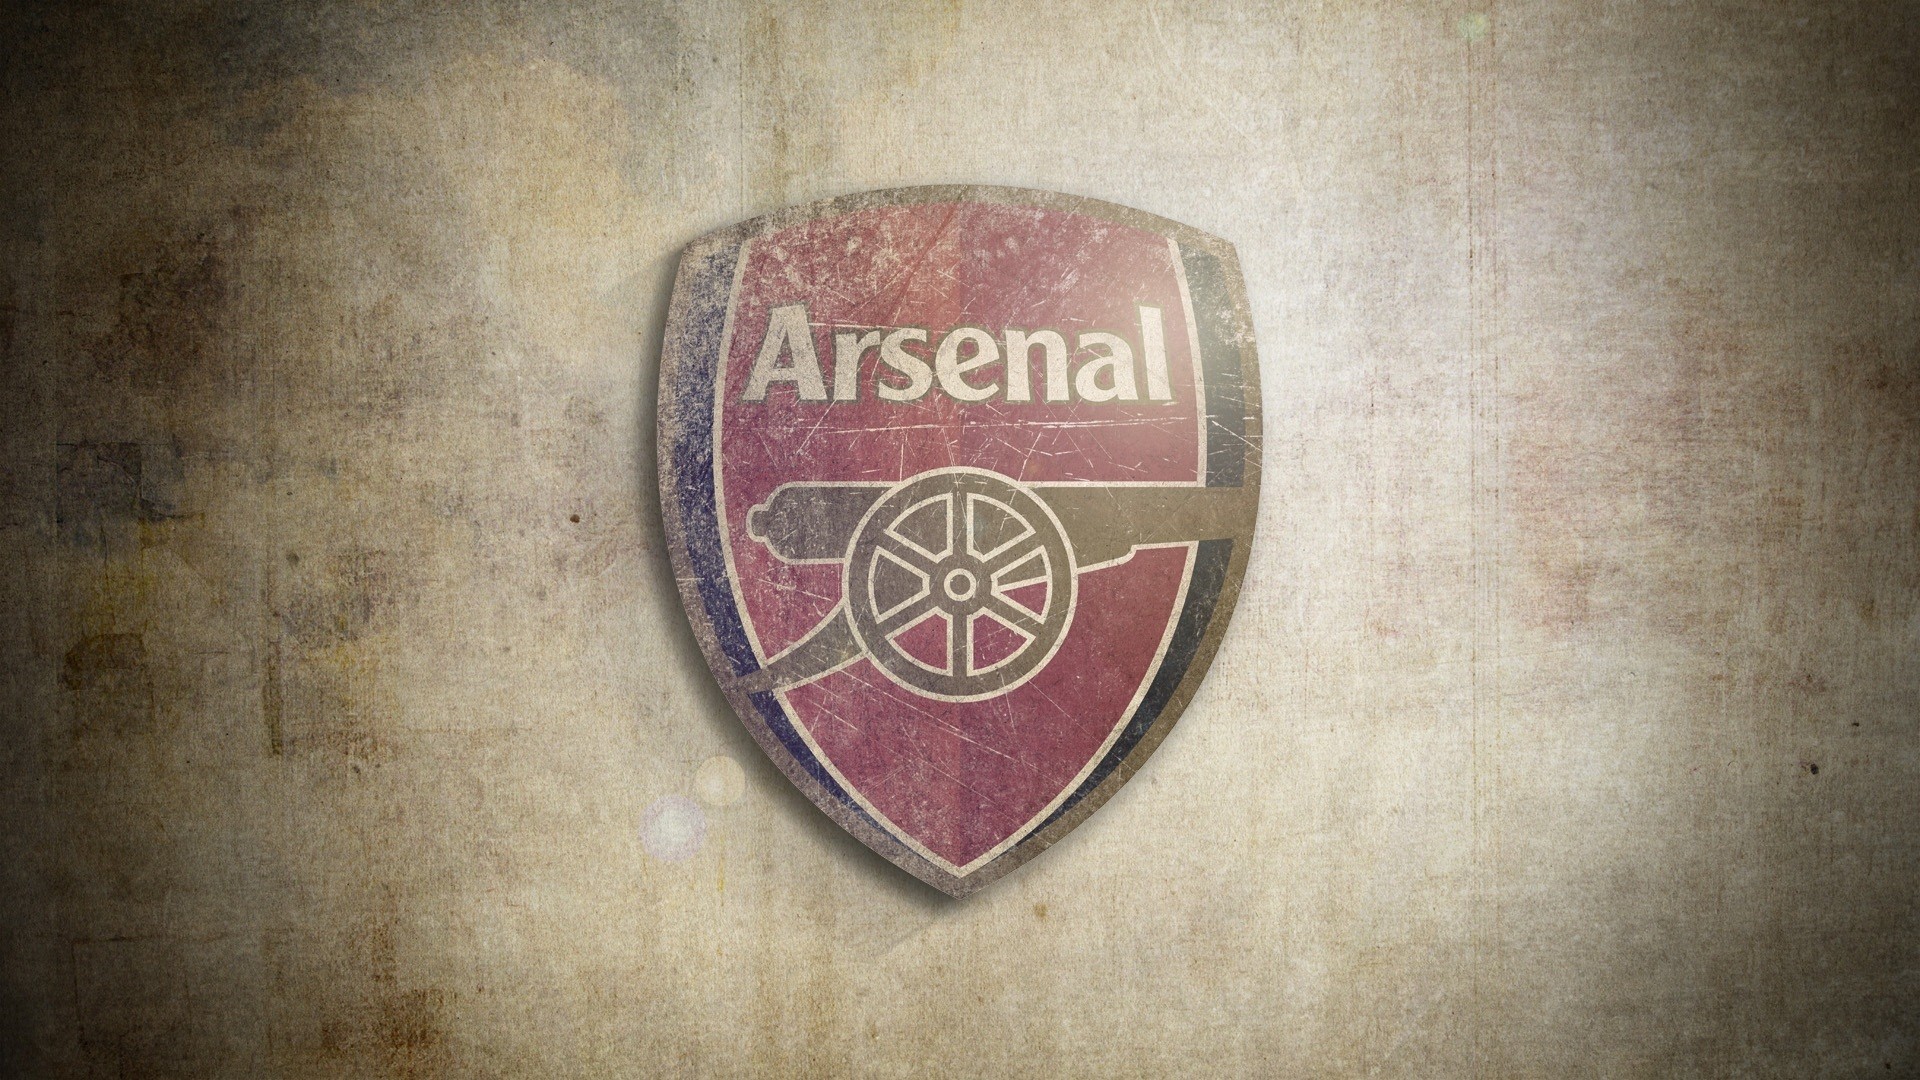 1920x1080 Arsenal Logo Wallpapers Free Download.